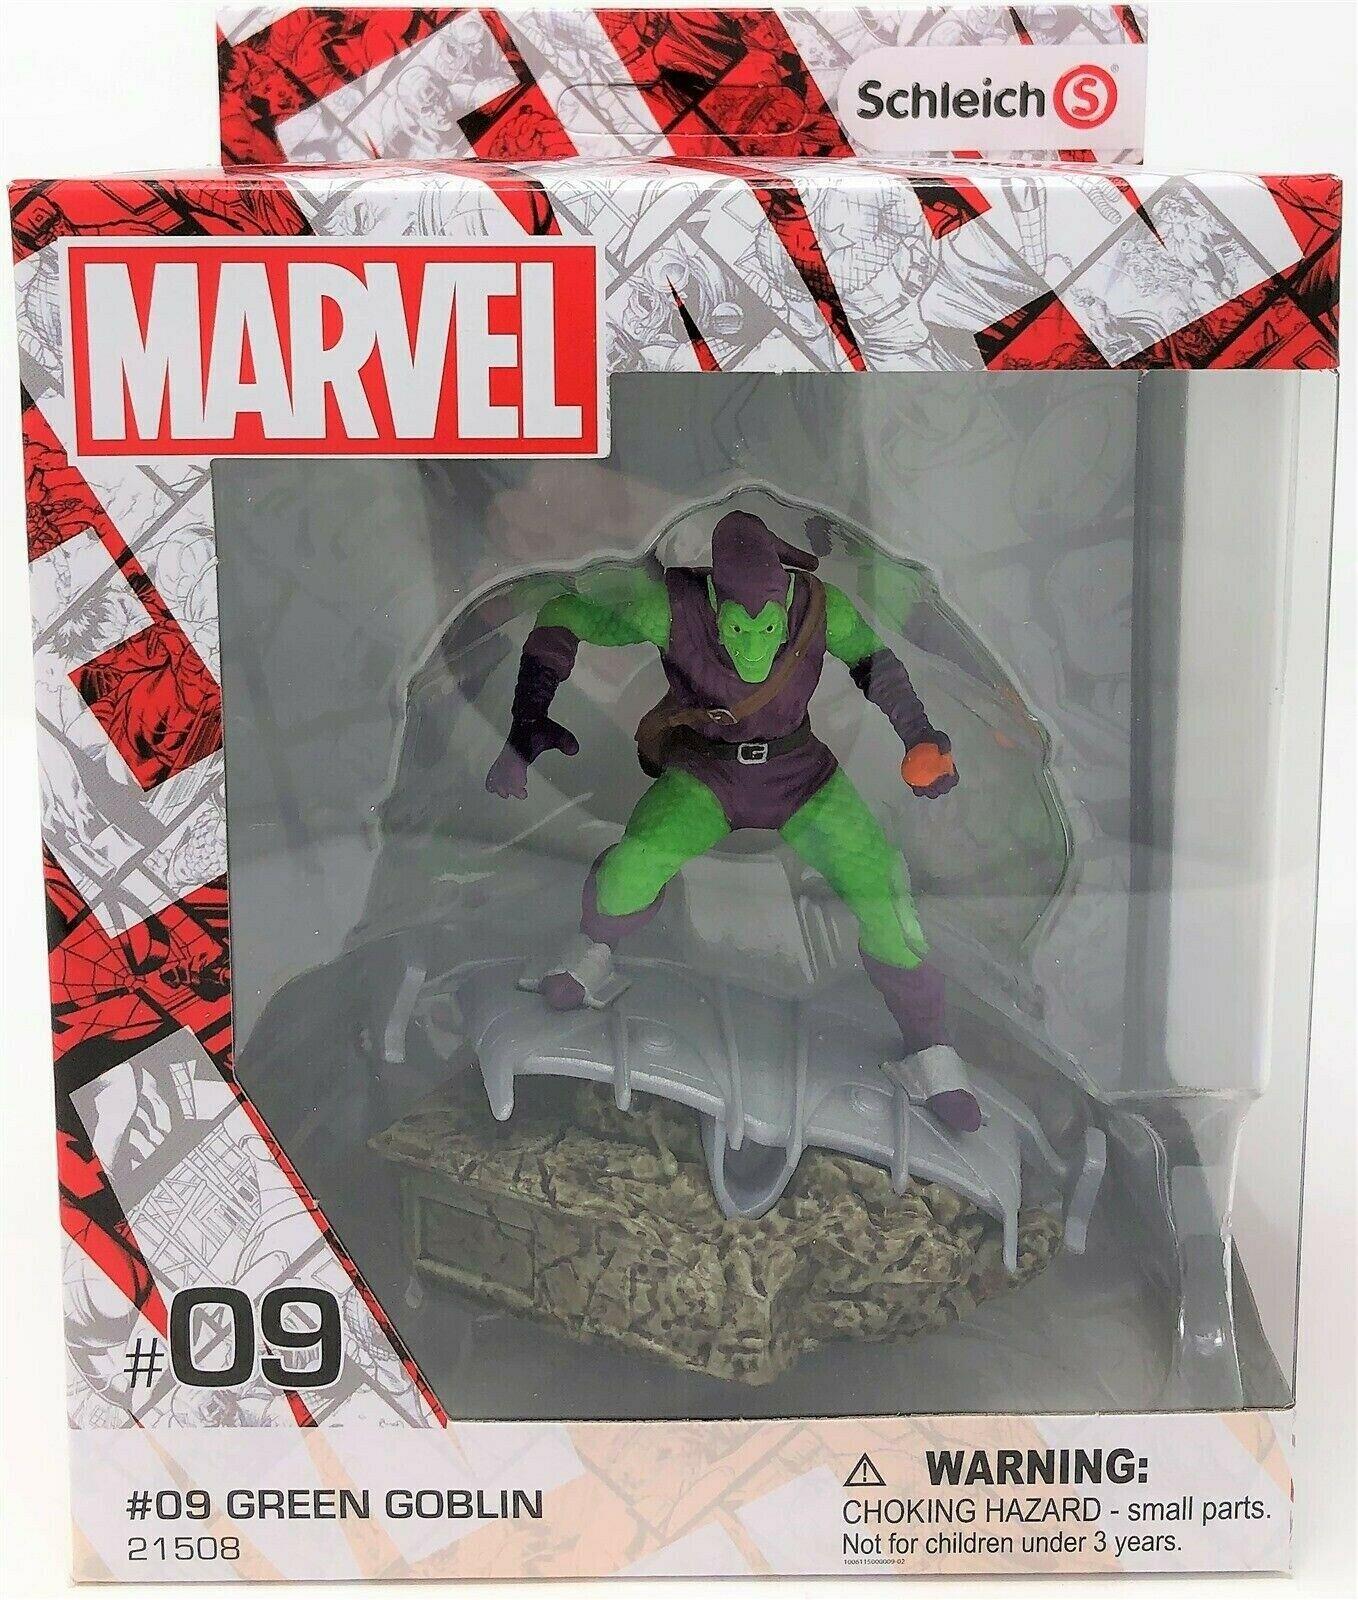 GREEN GOBLIN #09 21508 Marvel Schleich Hand Painted Figurine Toy